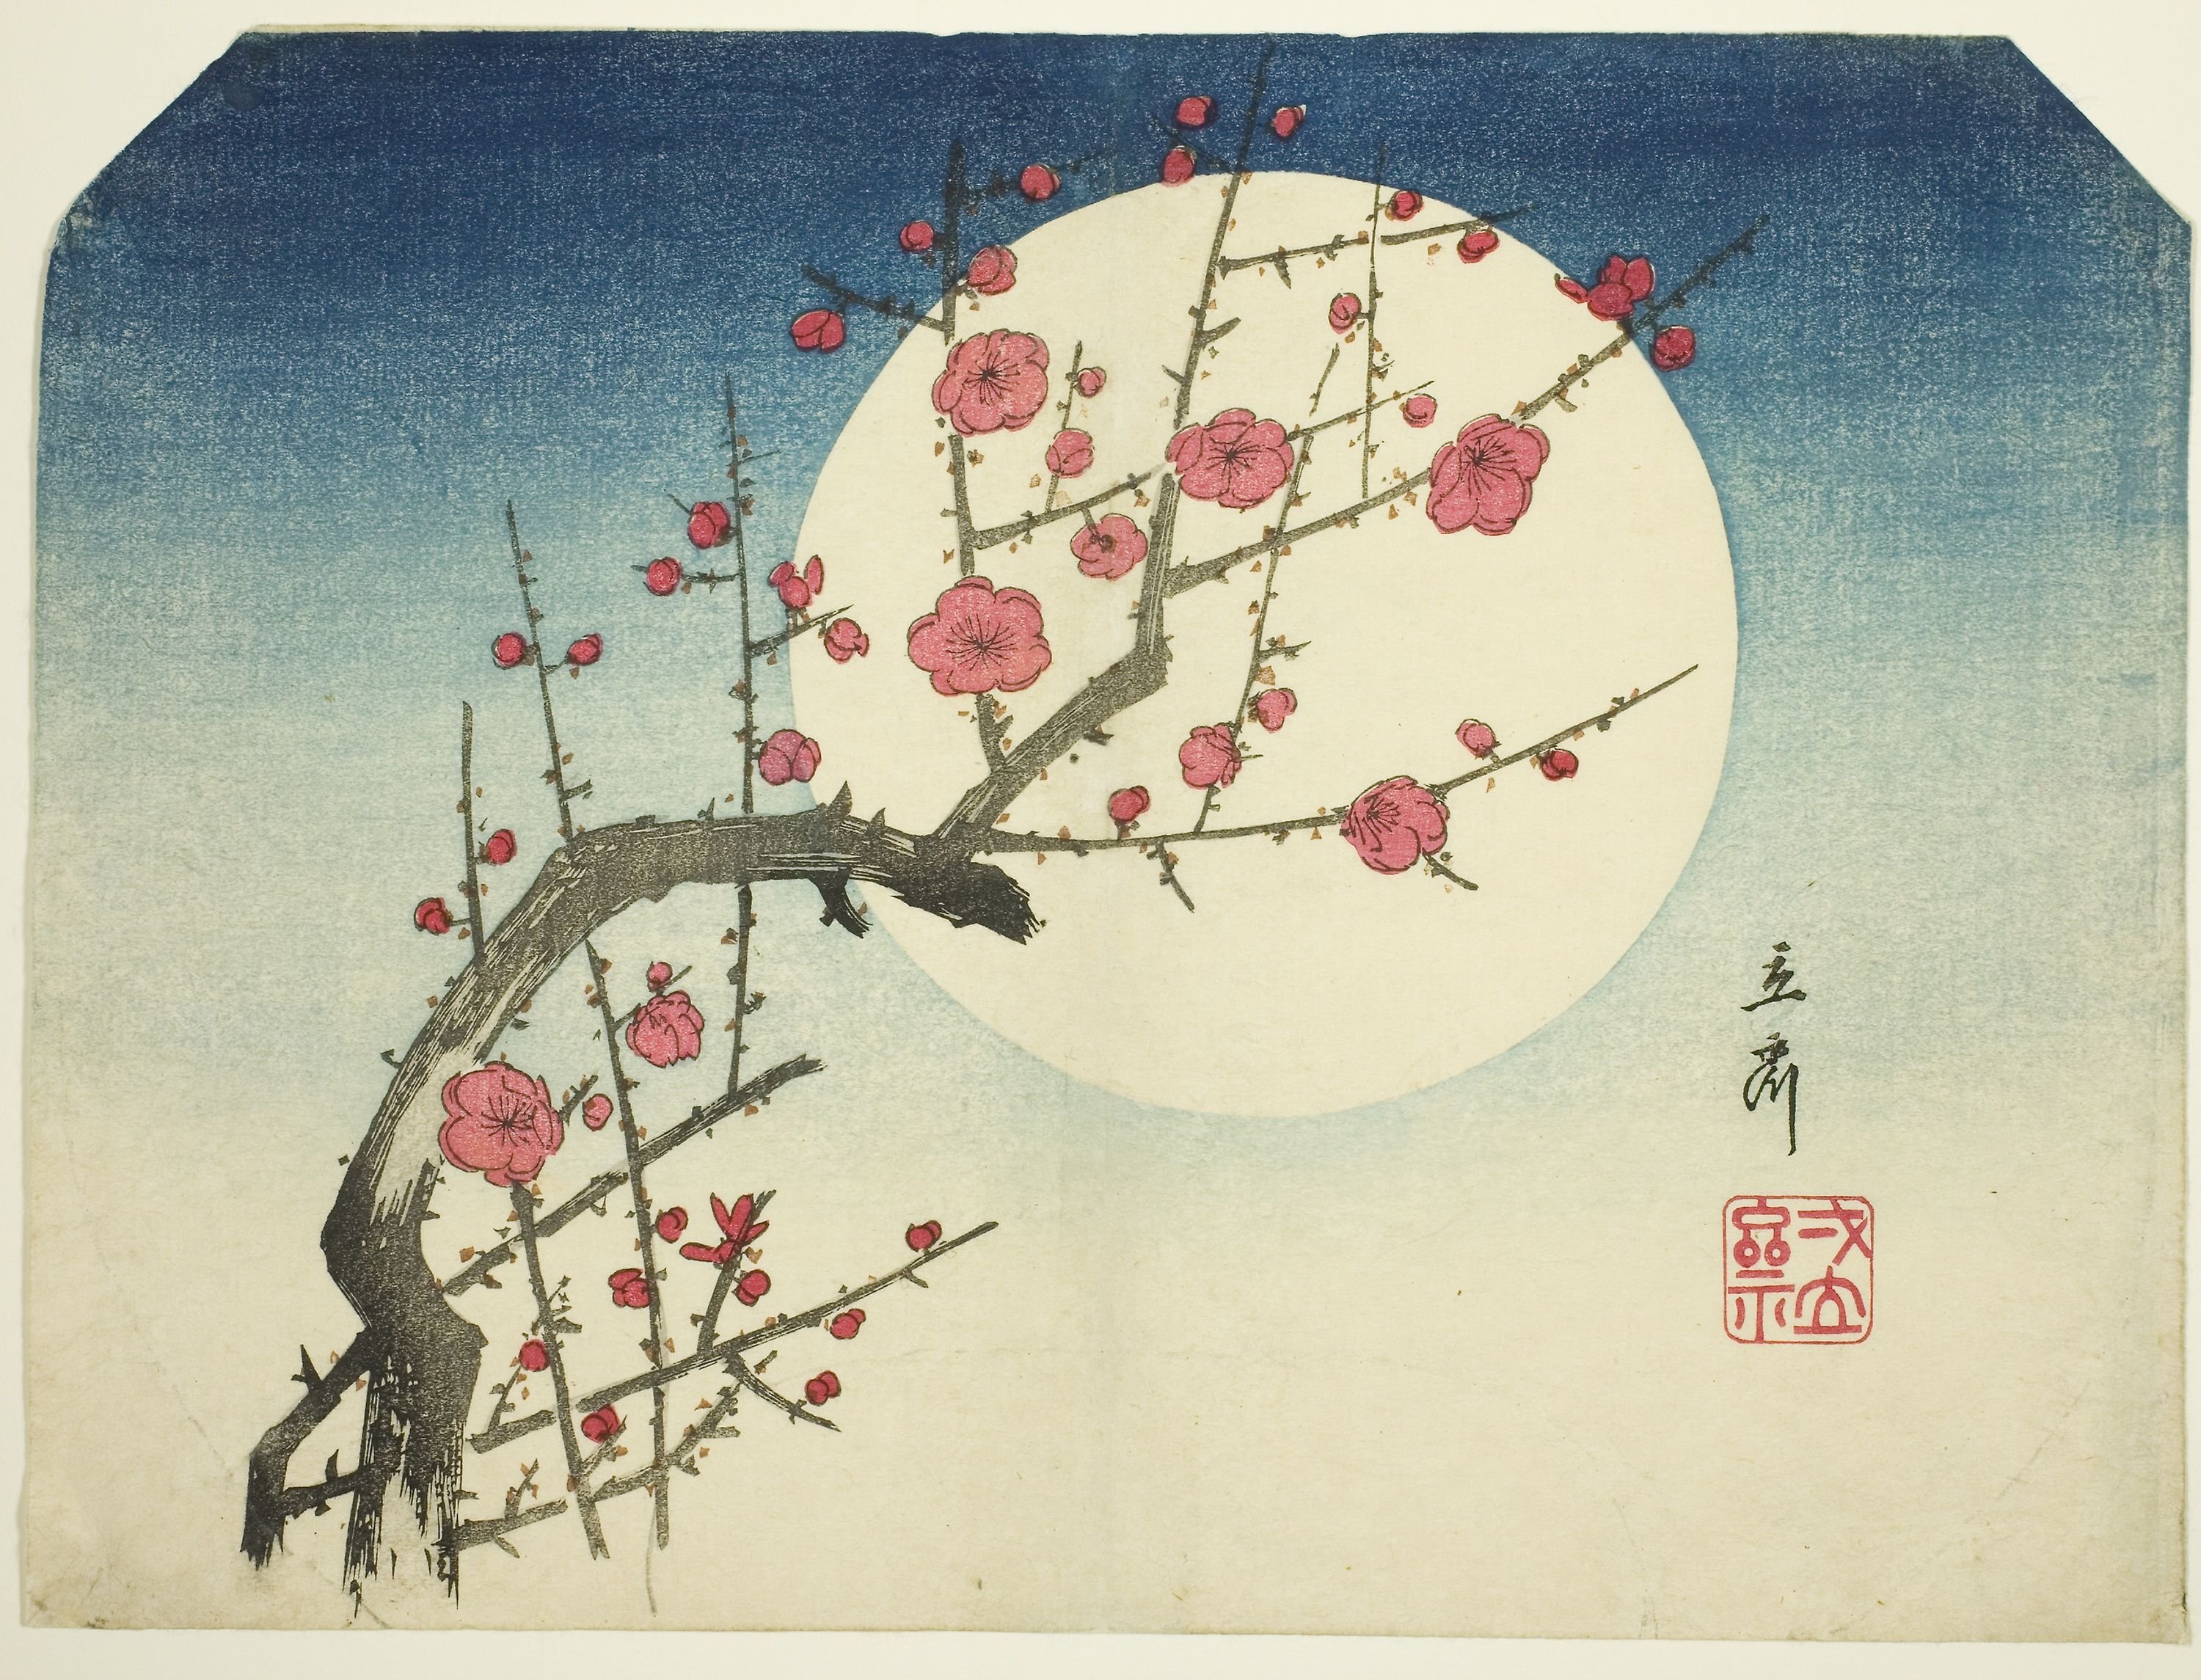 Хокку про сакуру. Хиросигэ Цветущая слива. Утагава Хиросигэ гора Фудзи и цветущие вишневые деревья. Японская гравюра Сакура Фудзи. Японские трехстишия хокку хайку.